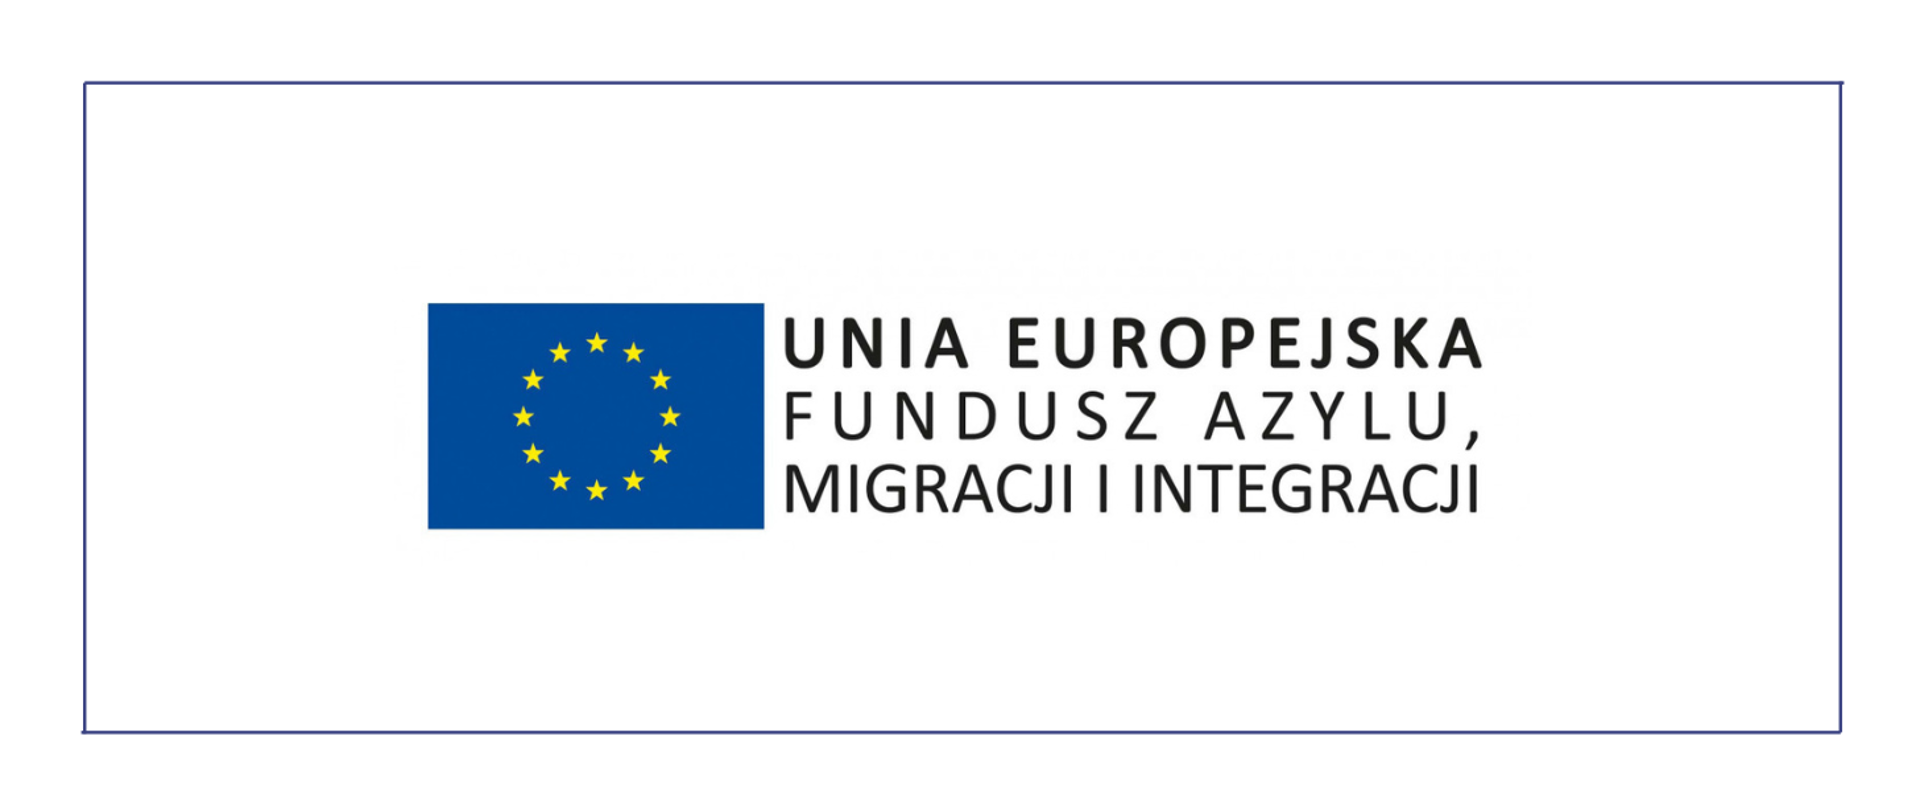 Grafika z napisem: Unia Europejska, Fundusz Azylu, Migracji i Integracji. Obok napisu znajduje się flaga UE